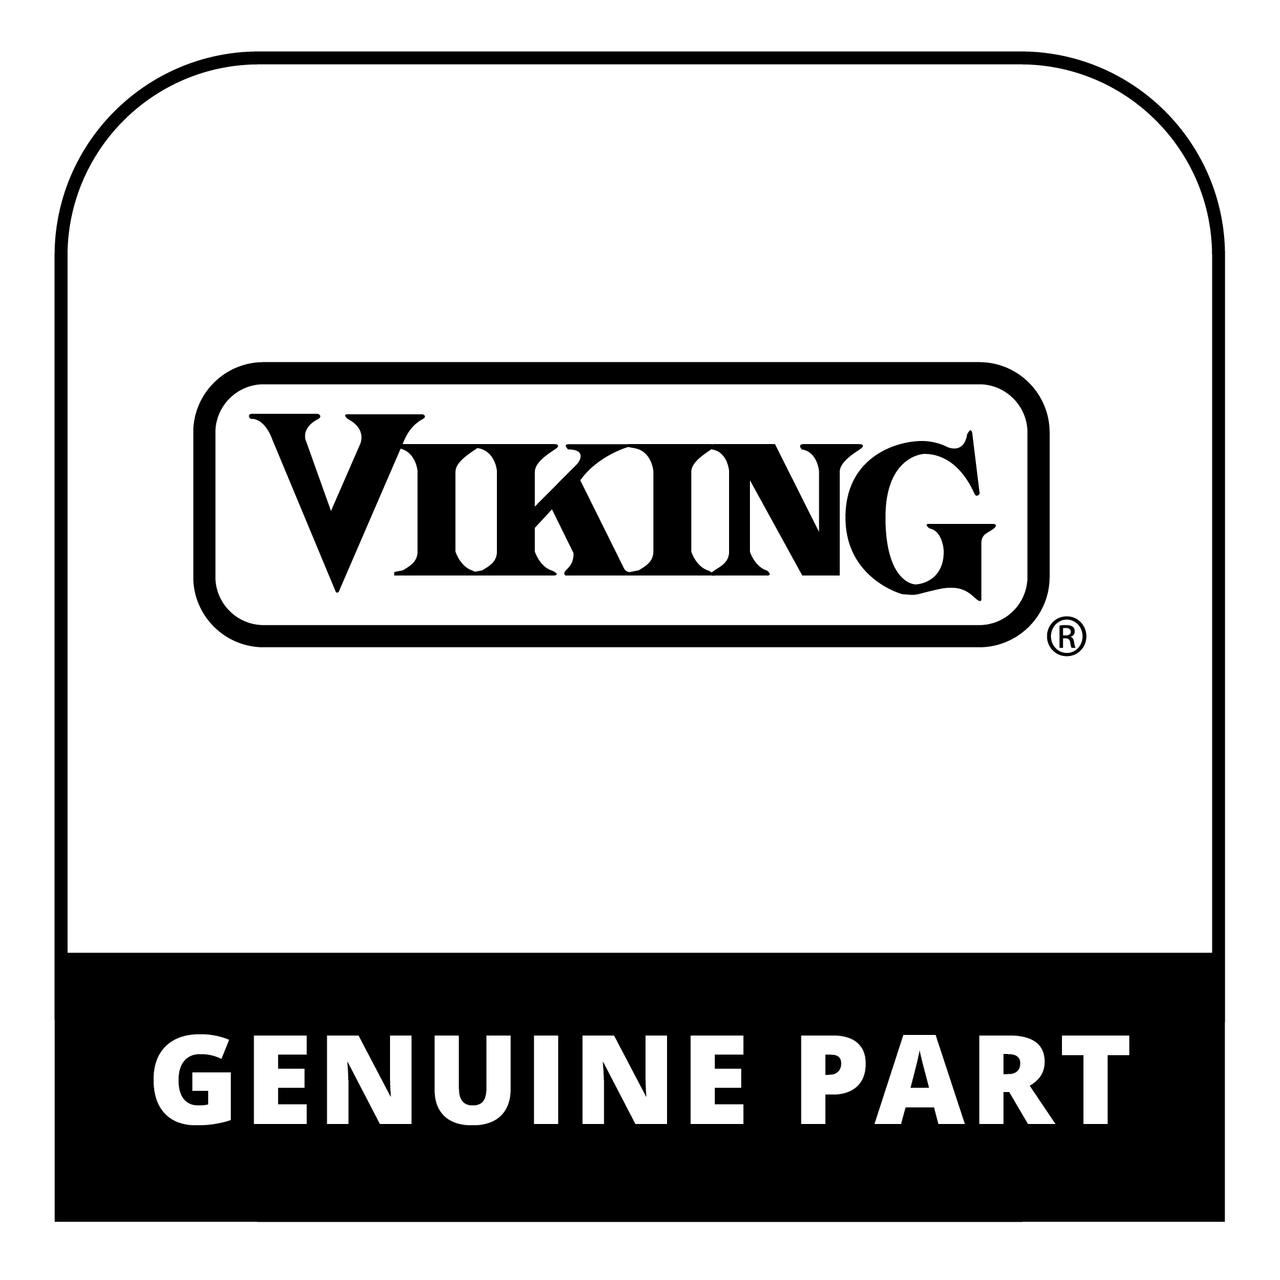 Viking 016855-002 - OUTER DOOR ASM (BK) W/O LOGO - Genuine Viking Part